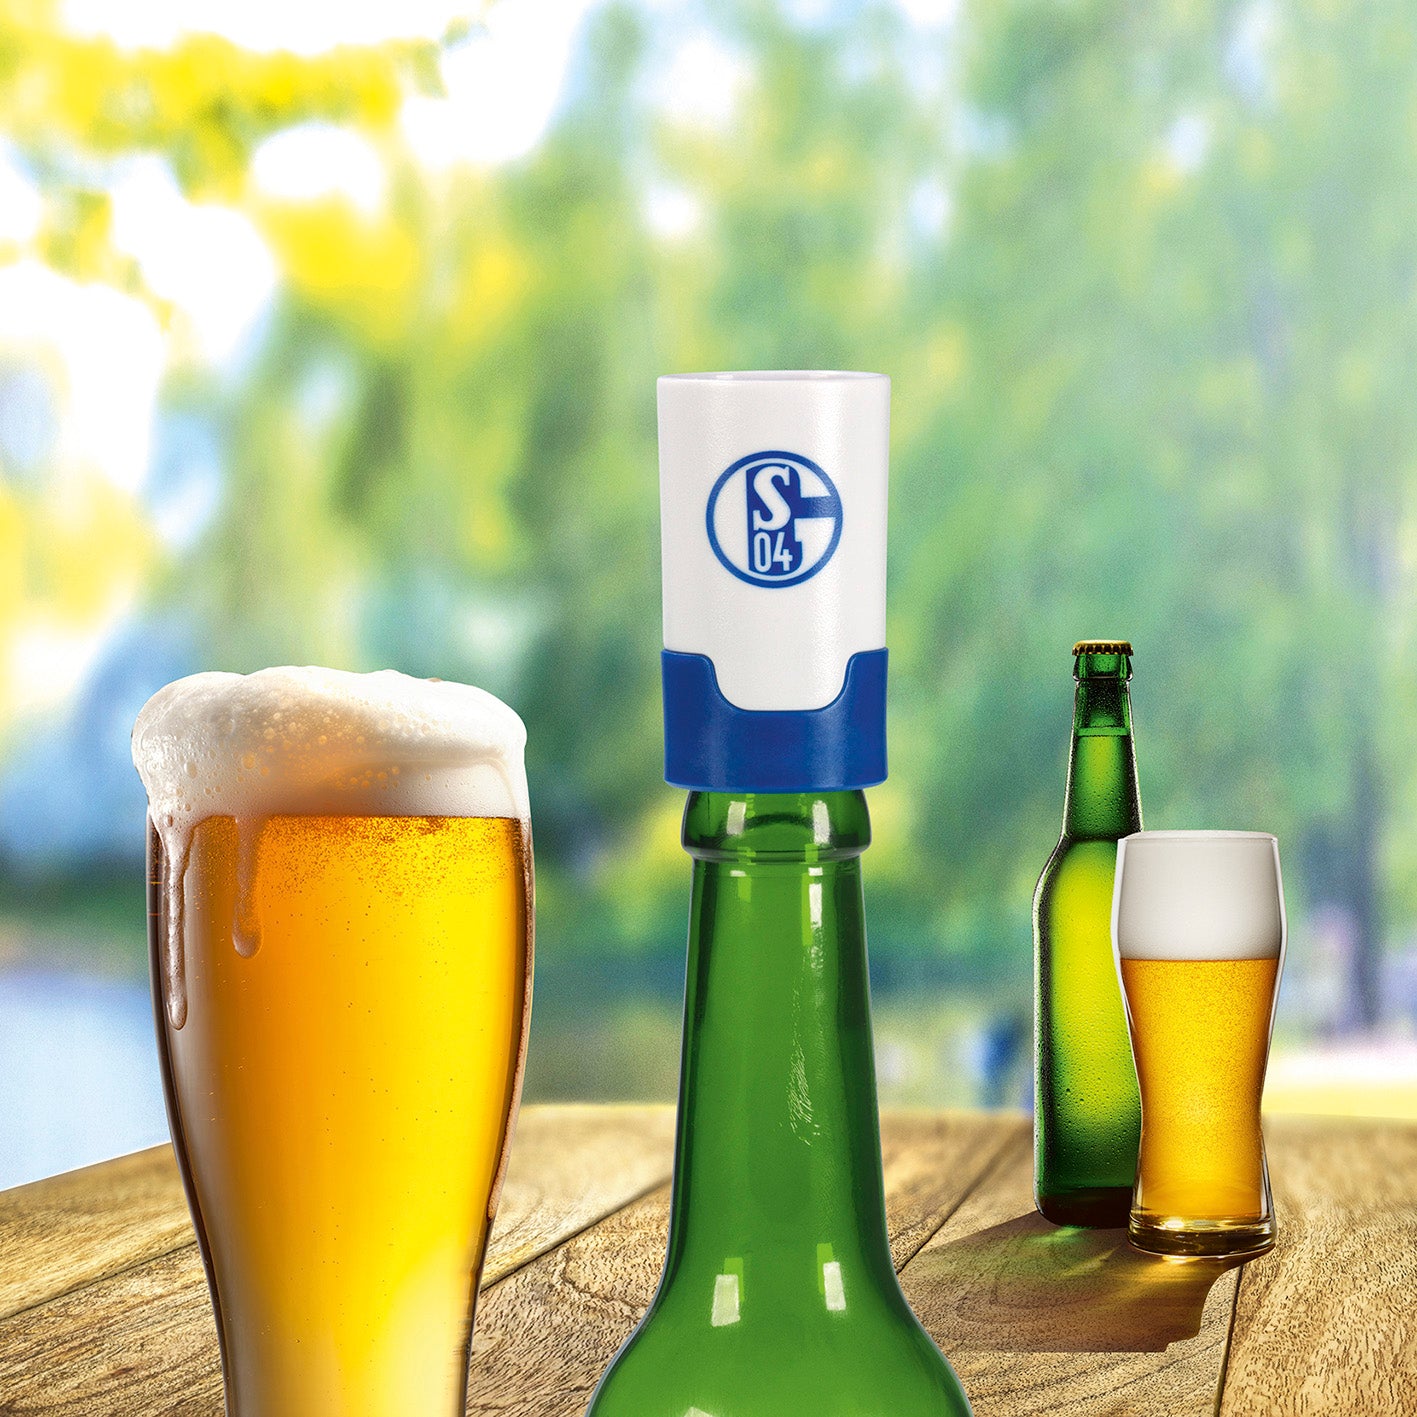 Bier-Aufbereiter im FC Schalke 04-Design - 3er-Set